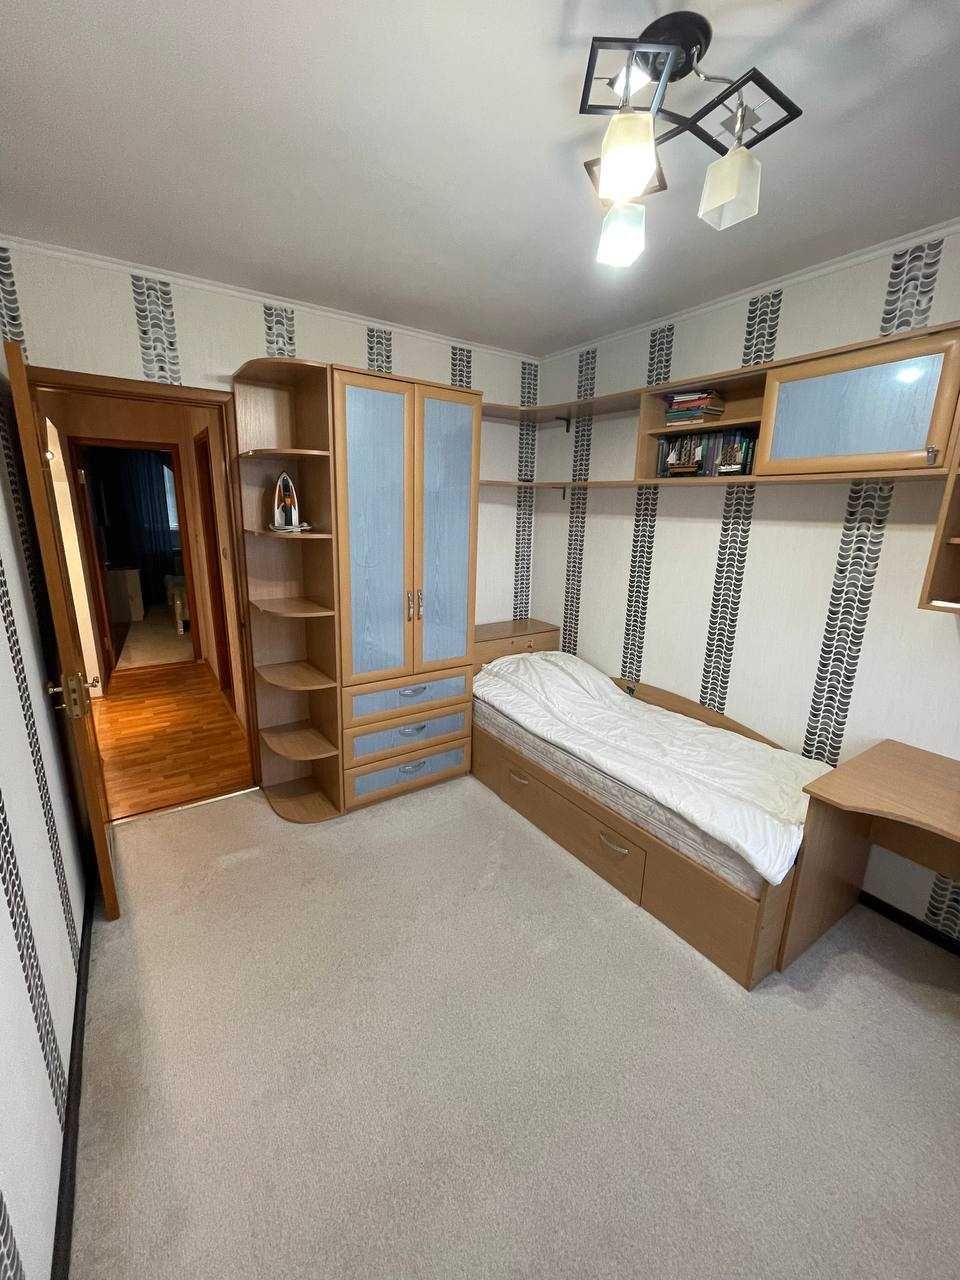 3 комнатная квартира в Черноморске рядом с морем (Лазурная)